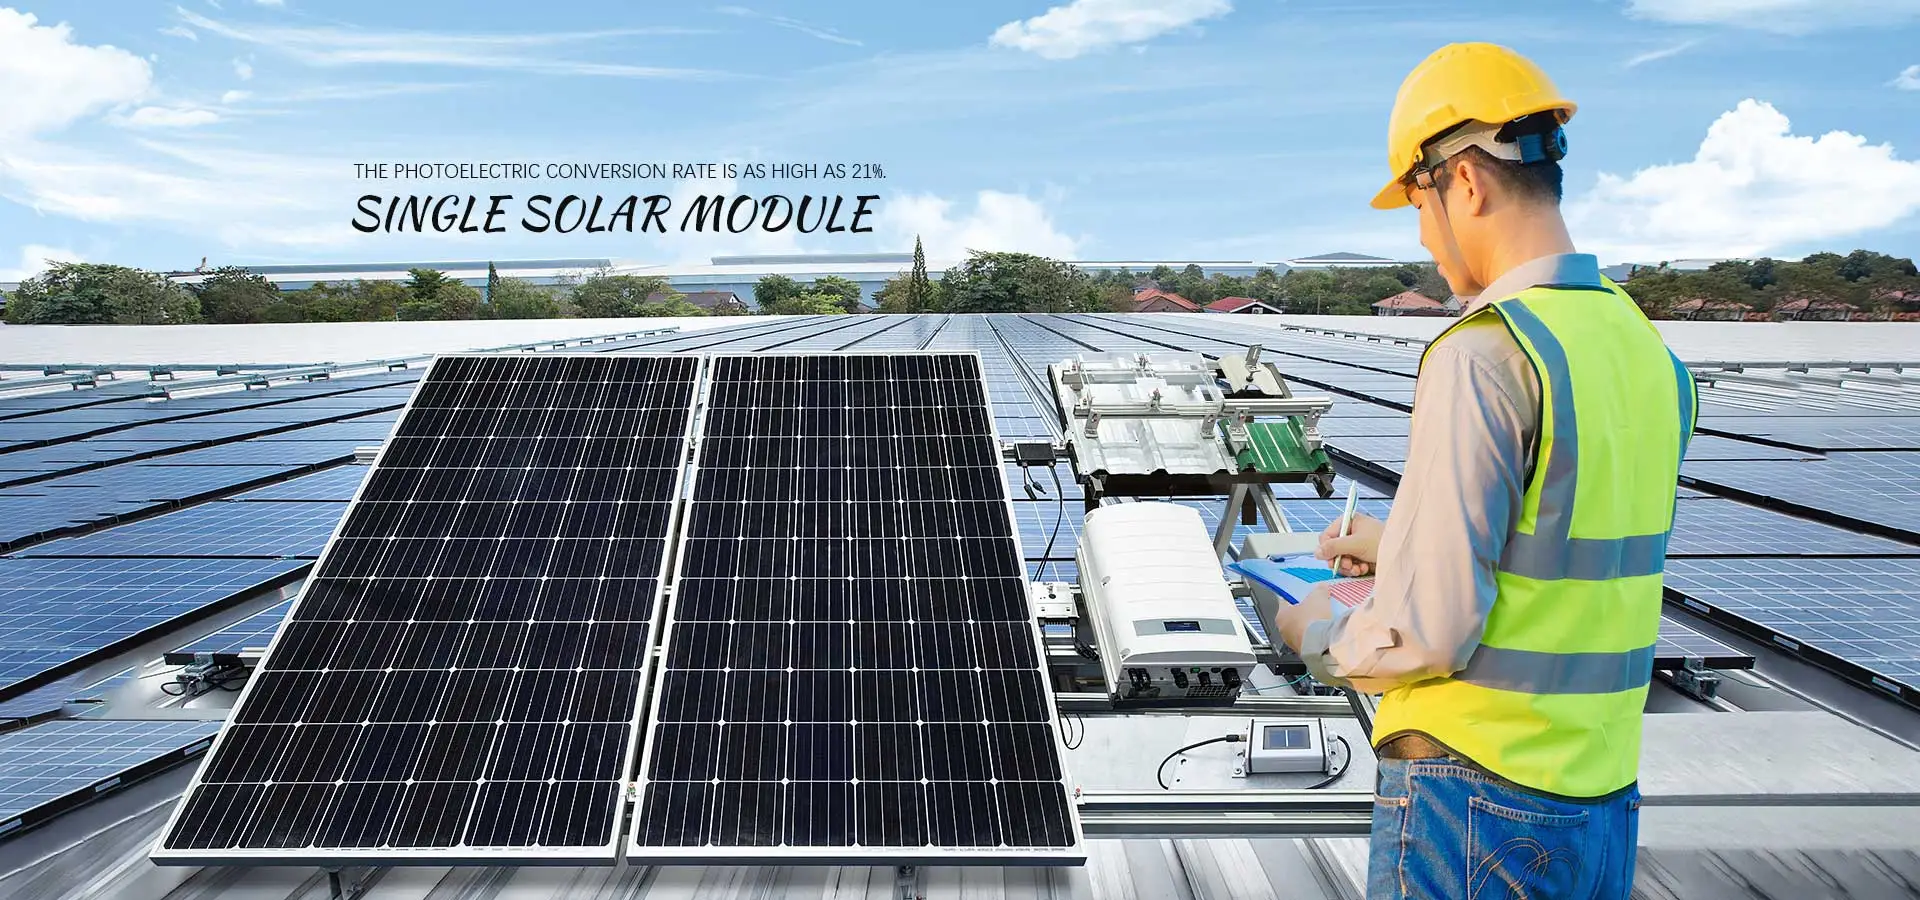 Výrobci a továrna solárních modulů s jedním sklem